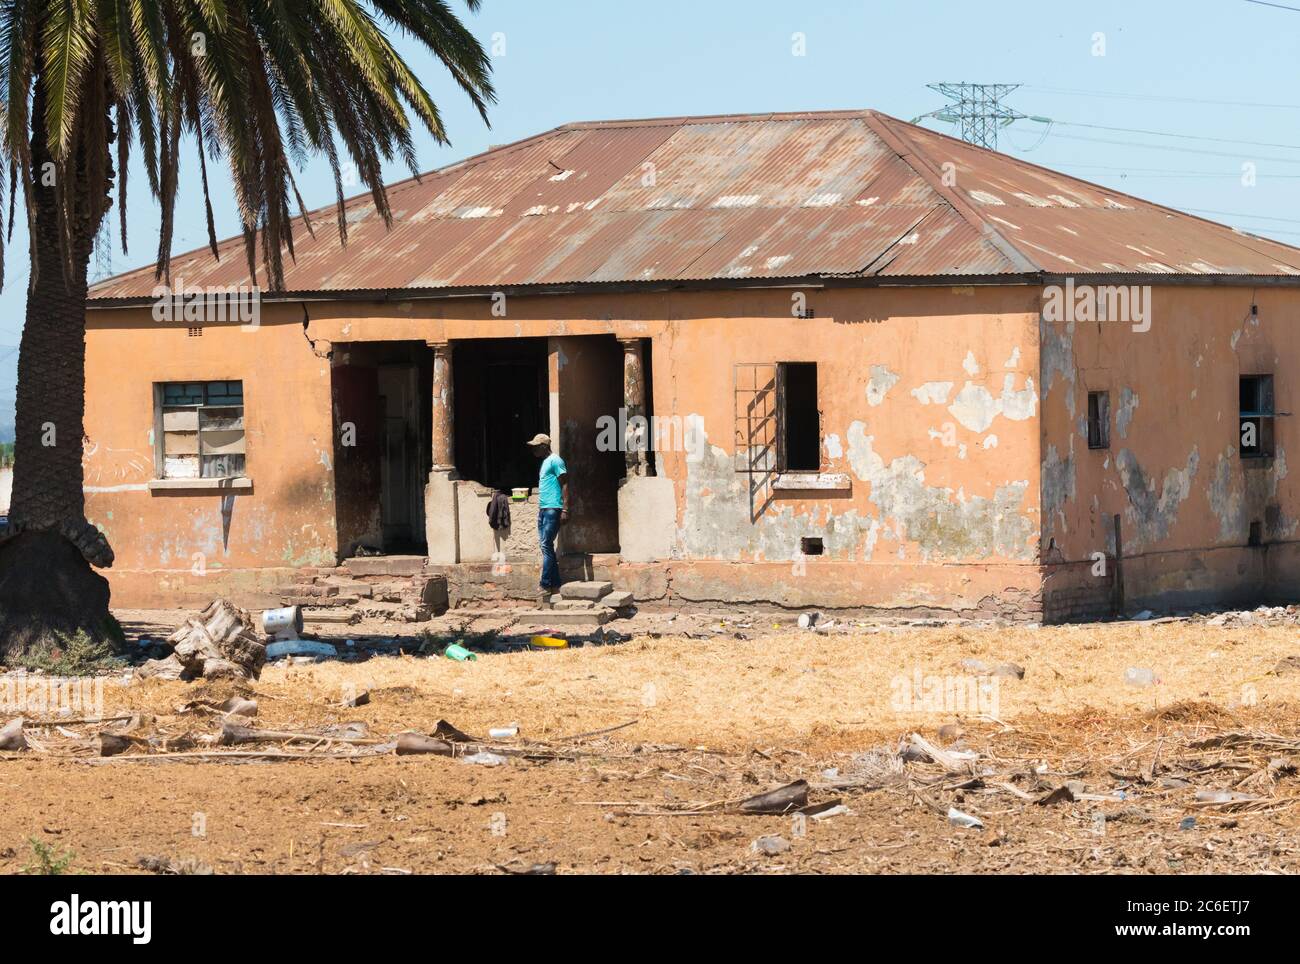 Maison ancienne, décrépite, négligée avec un Africain debout à l'extérieur montrant la pauvreté et les mauvaises conditions de vie dans la ville urbaine du Cap, Afrique du Sud Banque D'Images